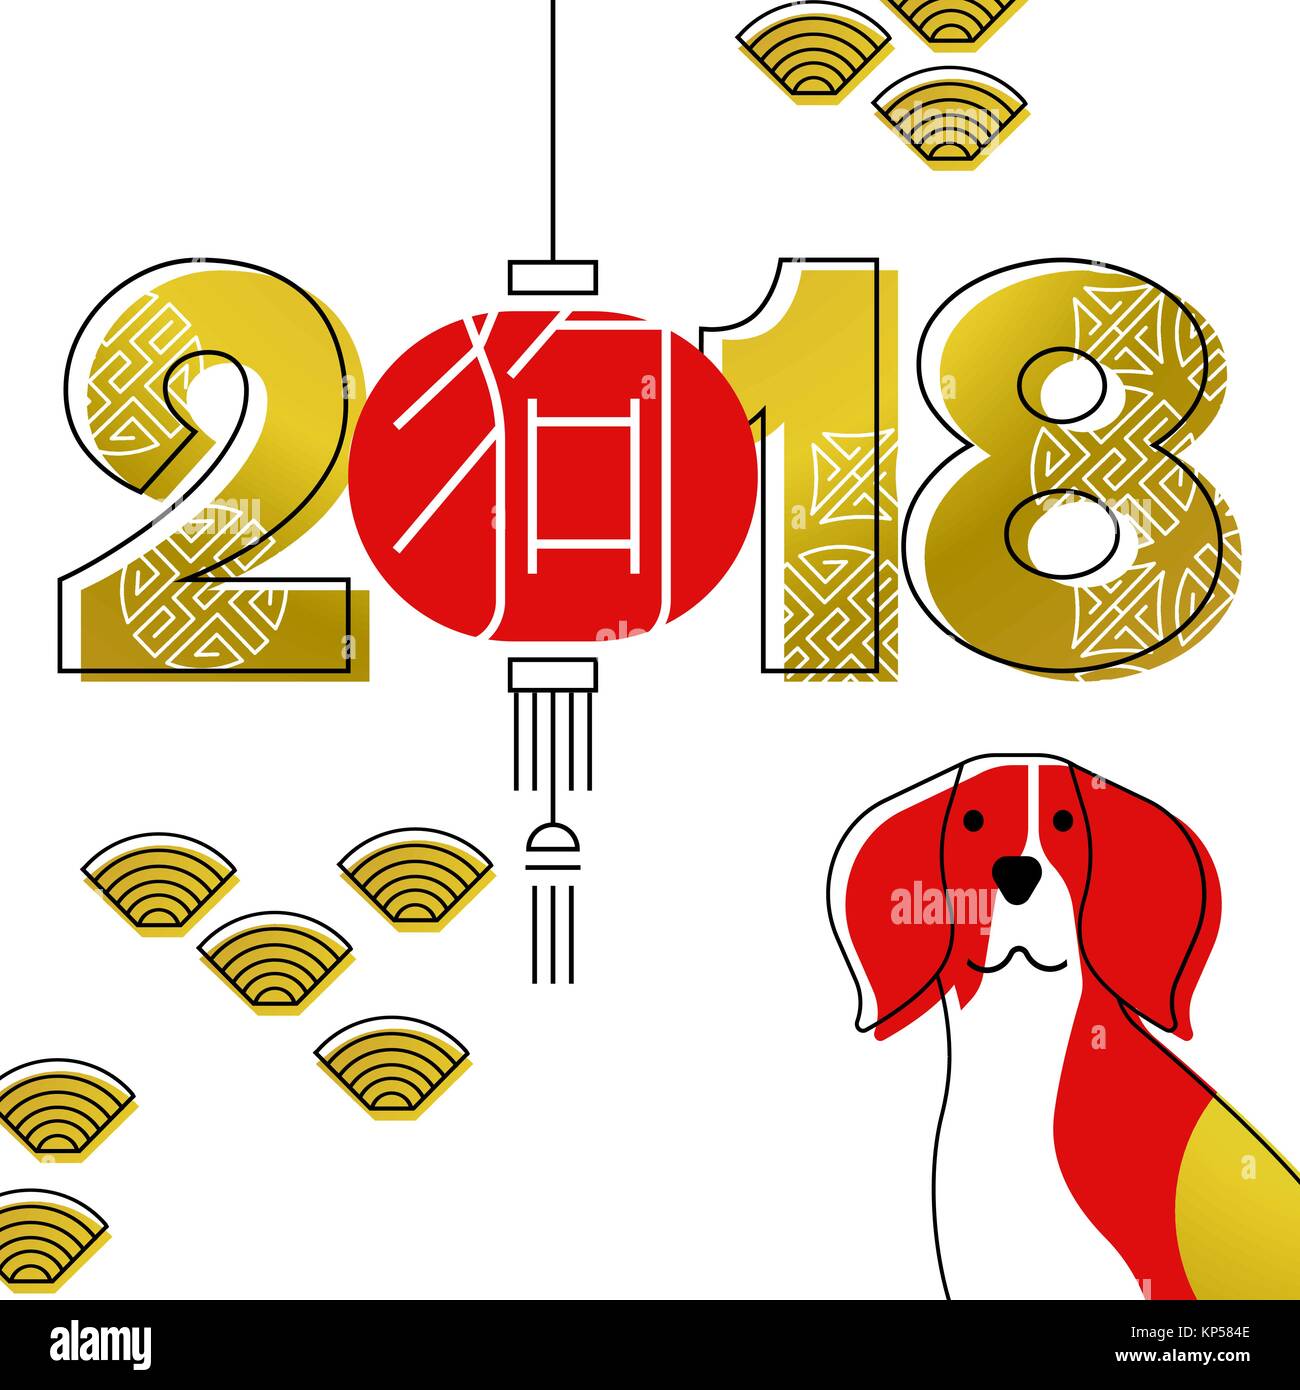 Chinesisches Neujahr 2018 moderne Linie kunst Grußkarte mit Beagle Hund, asiatische Lampe und goldene Farbe und Typografie. EPS 10 Vektor. Stock Vektor